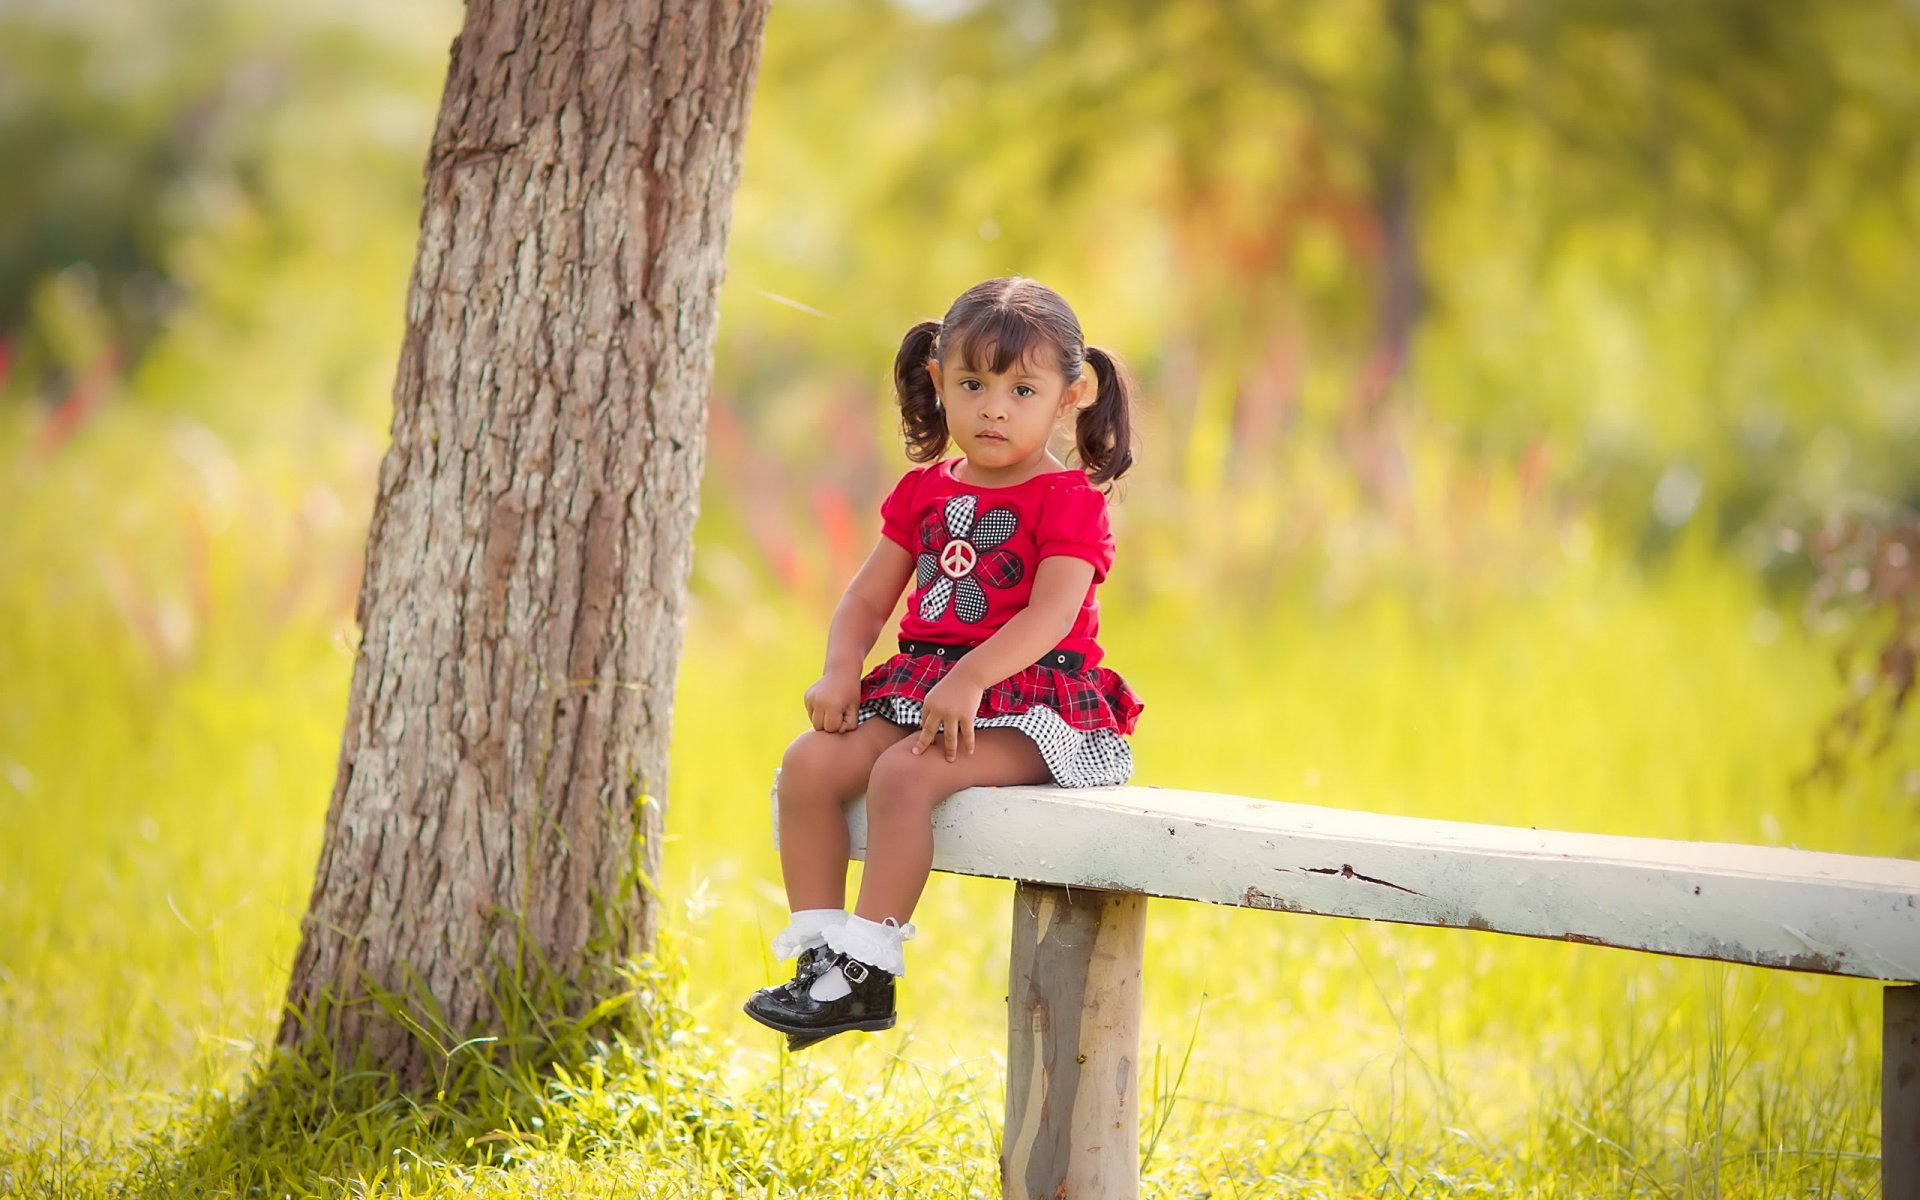 Маленькая девочка на скамейке в солнечном лесу Обои на рабочий стол.